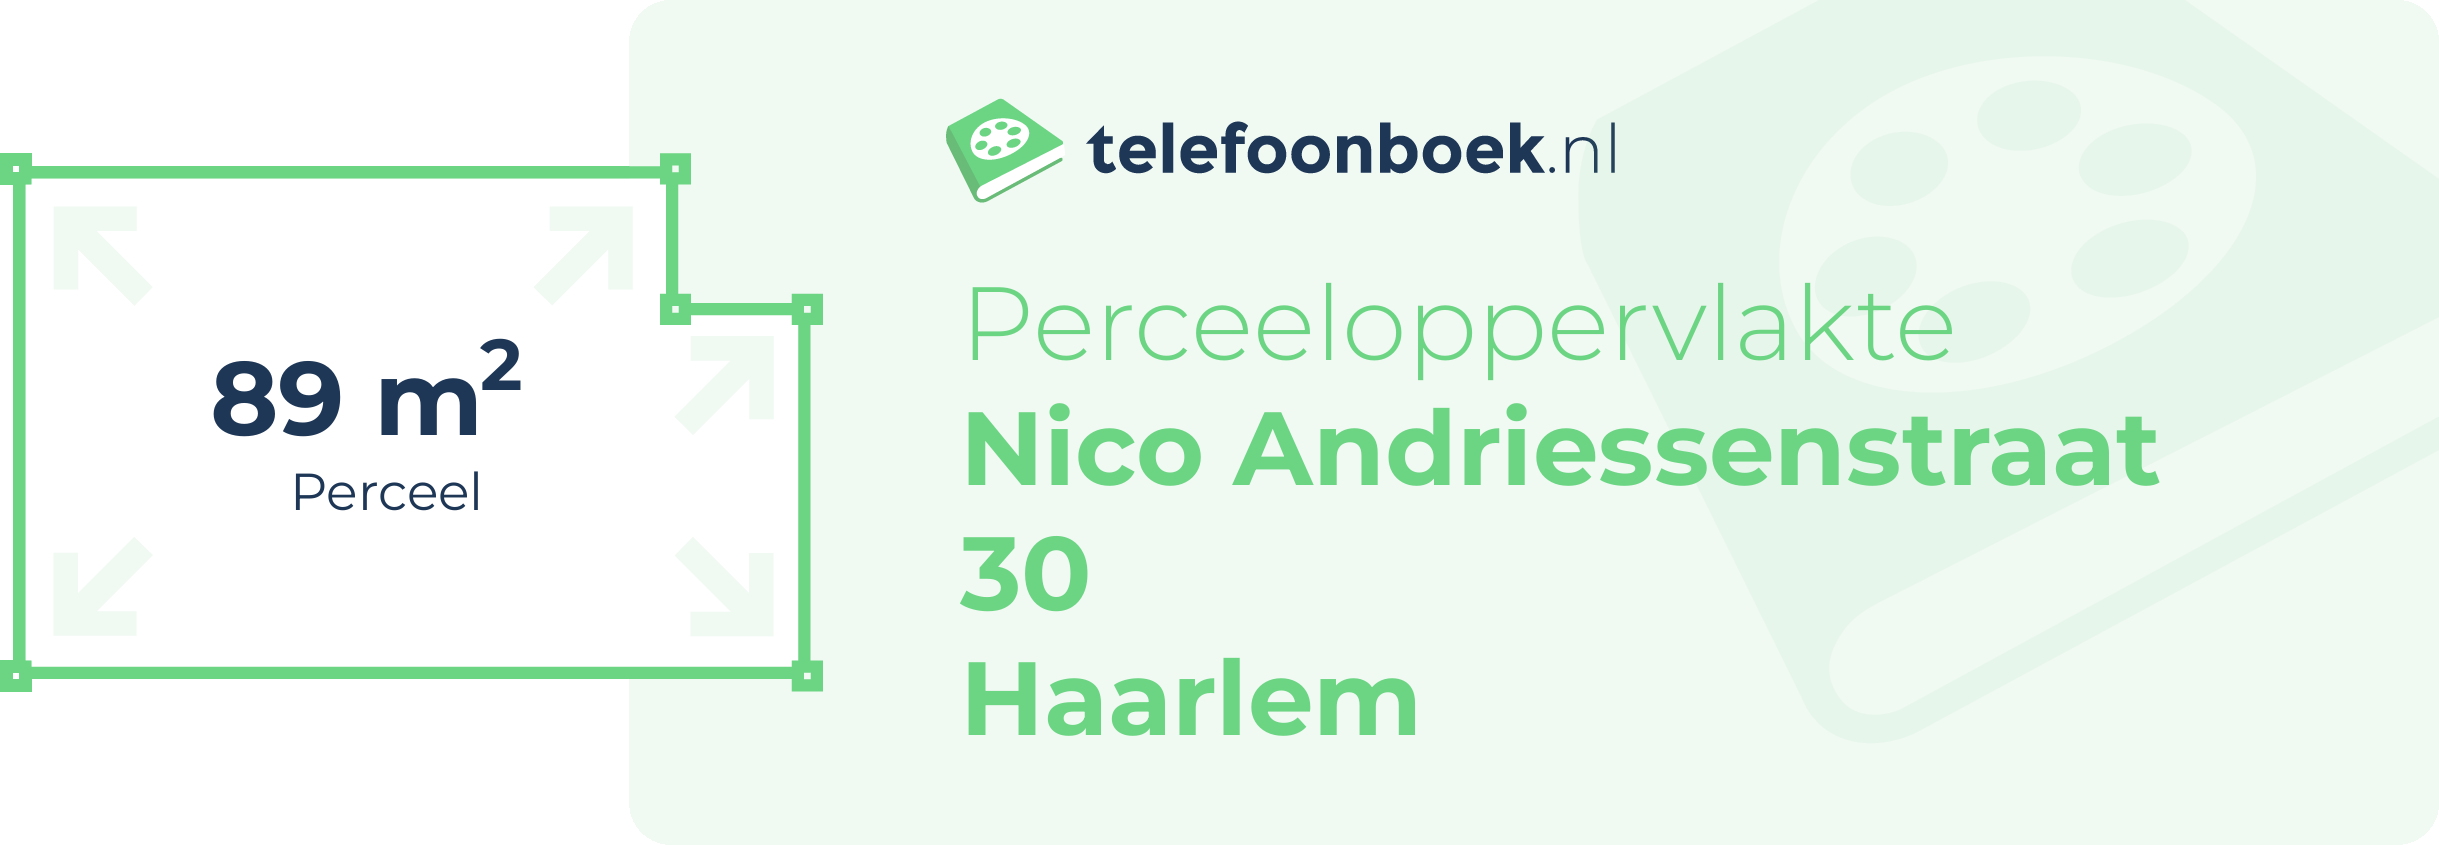 Perceeloppervlakte Nico Andriessenstraat 30 Haarlem